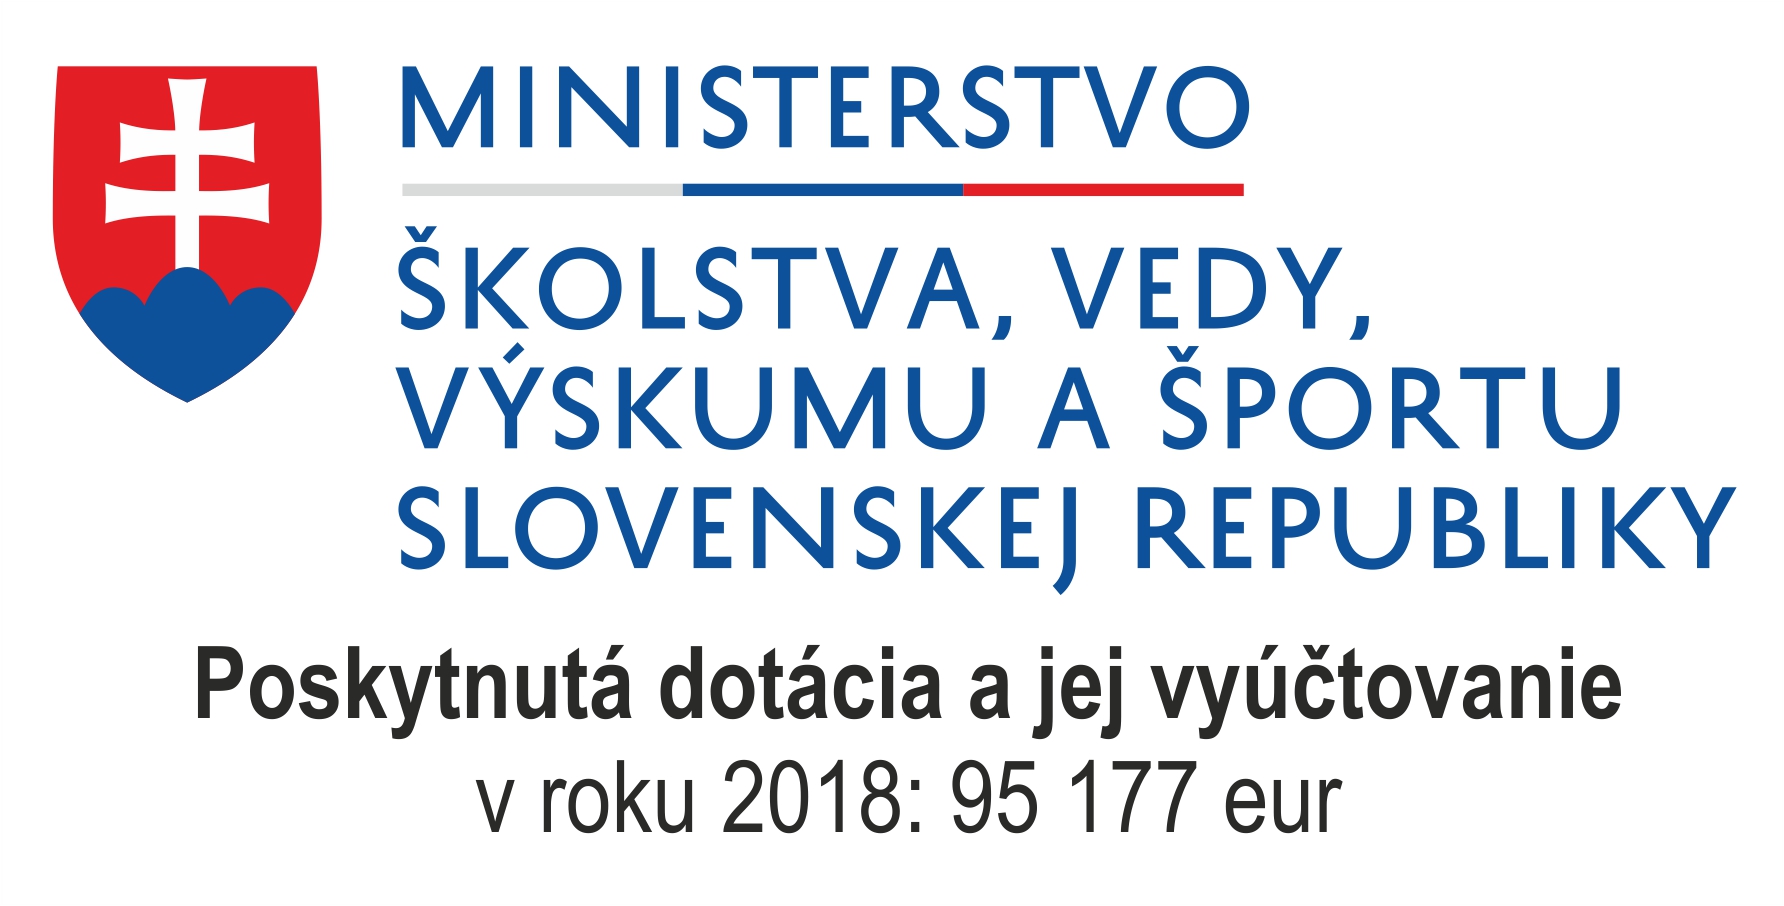 MVV_logo_2018ajsumaKST